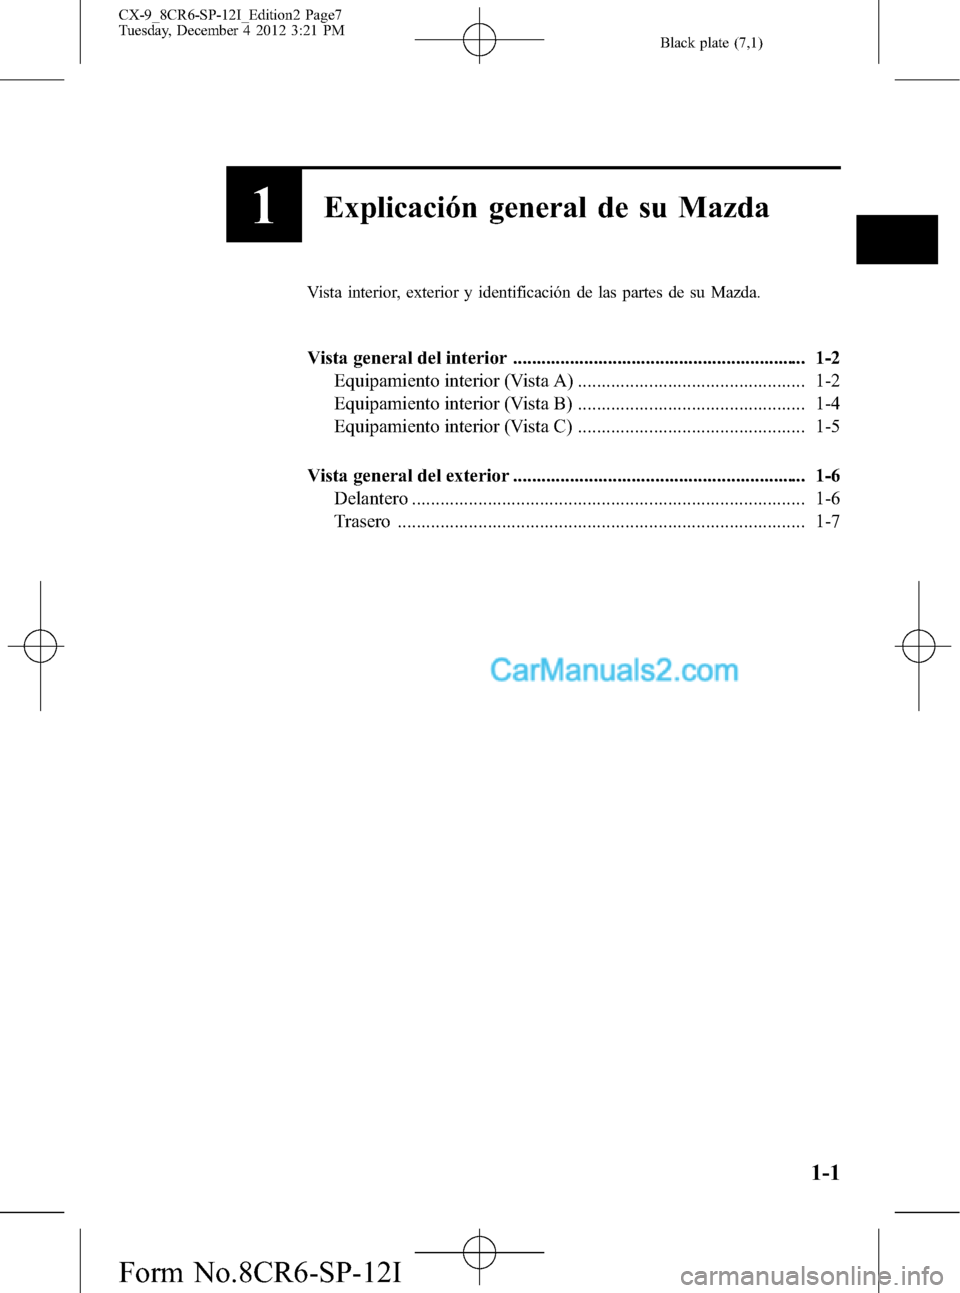 MAZDA MODEL CX-9 2015  Manual del propietario (in Spanish)  Black plate (7,1)
1Explicación general de su Mazda
Vista interior, exterior y identificación de las partes de su Mazda.
Vista general del interior ...................................................